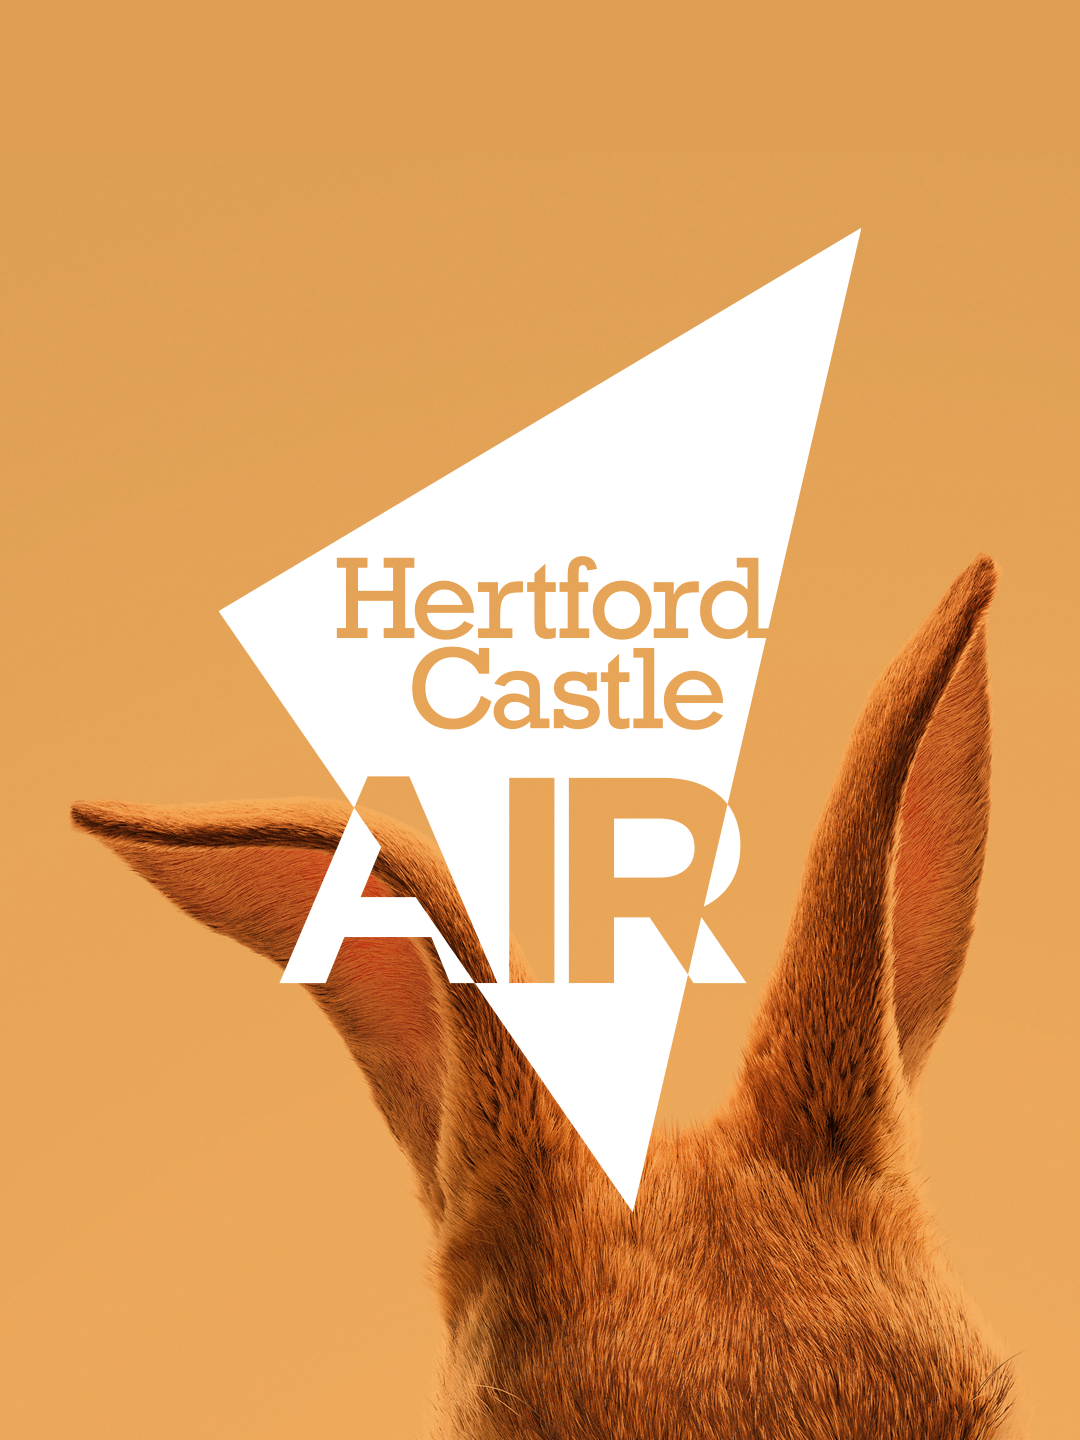 Hertford Castle's open-air brand mark design over Peter Rabbit's ears.